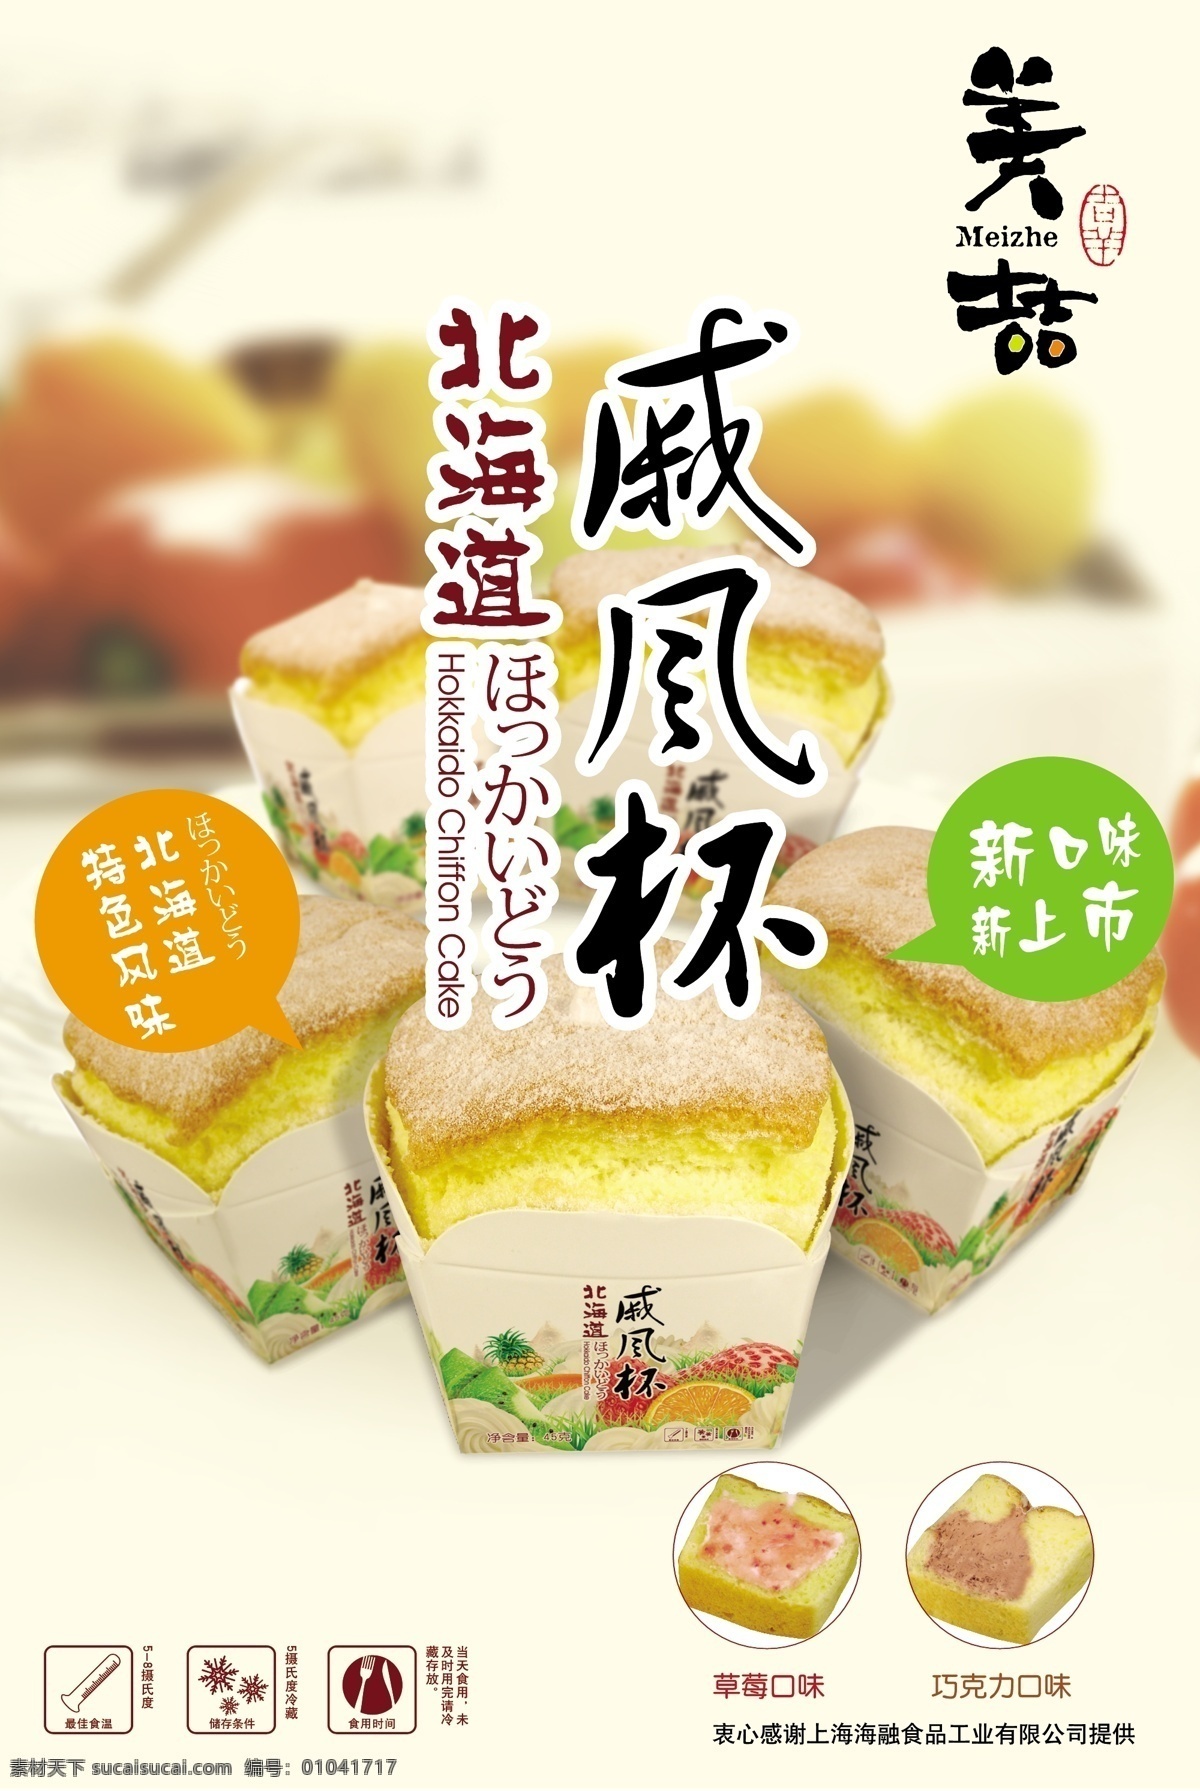 蛋糕广告 蛋糕 面包 北海道戚风杯 新口味 新上市 海报 广告 食物 食品 矢量